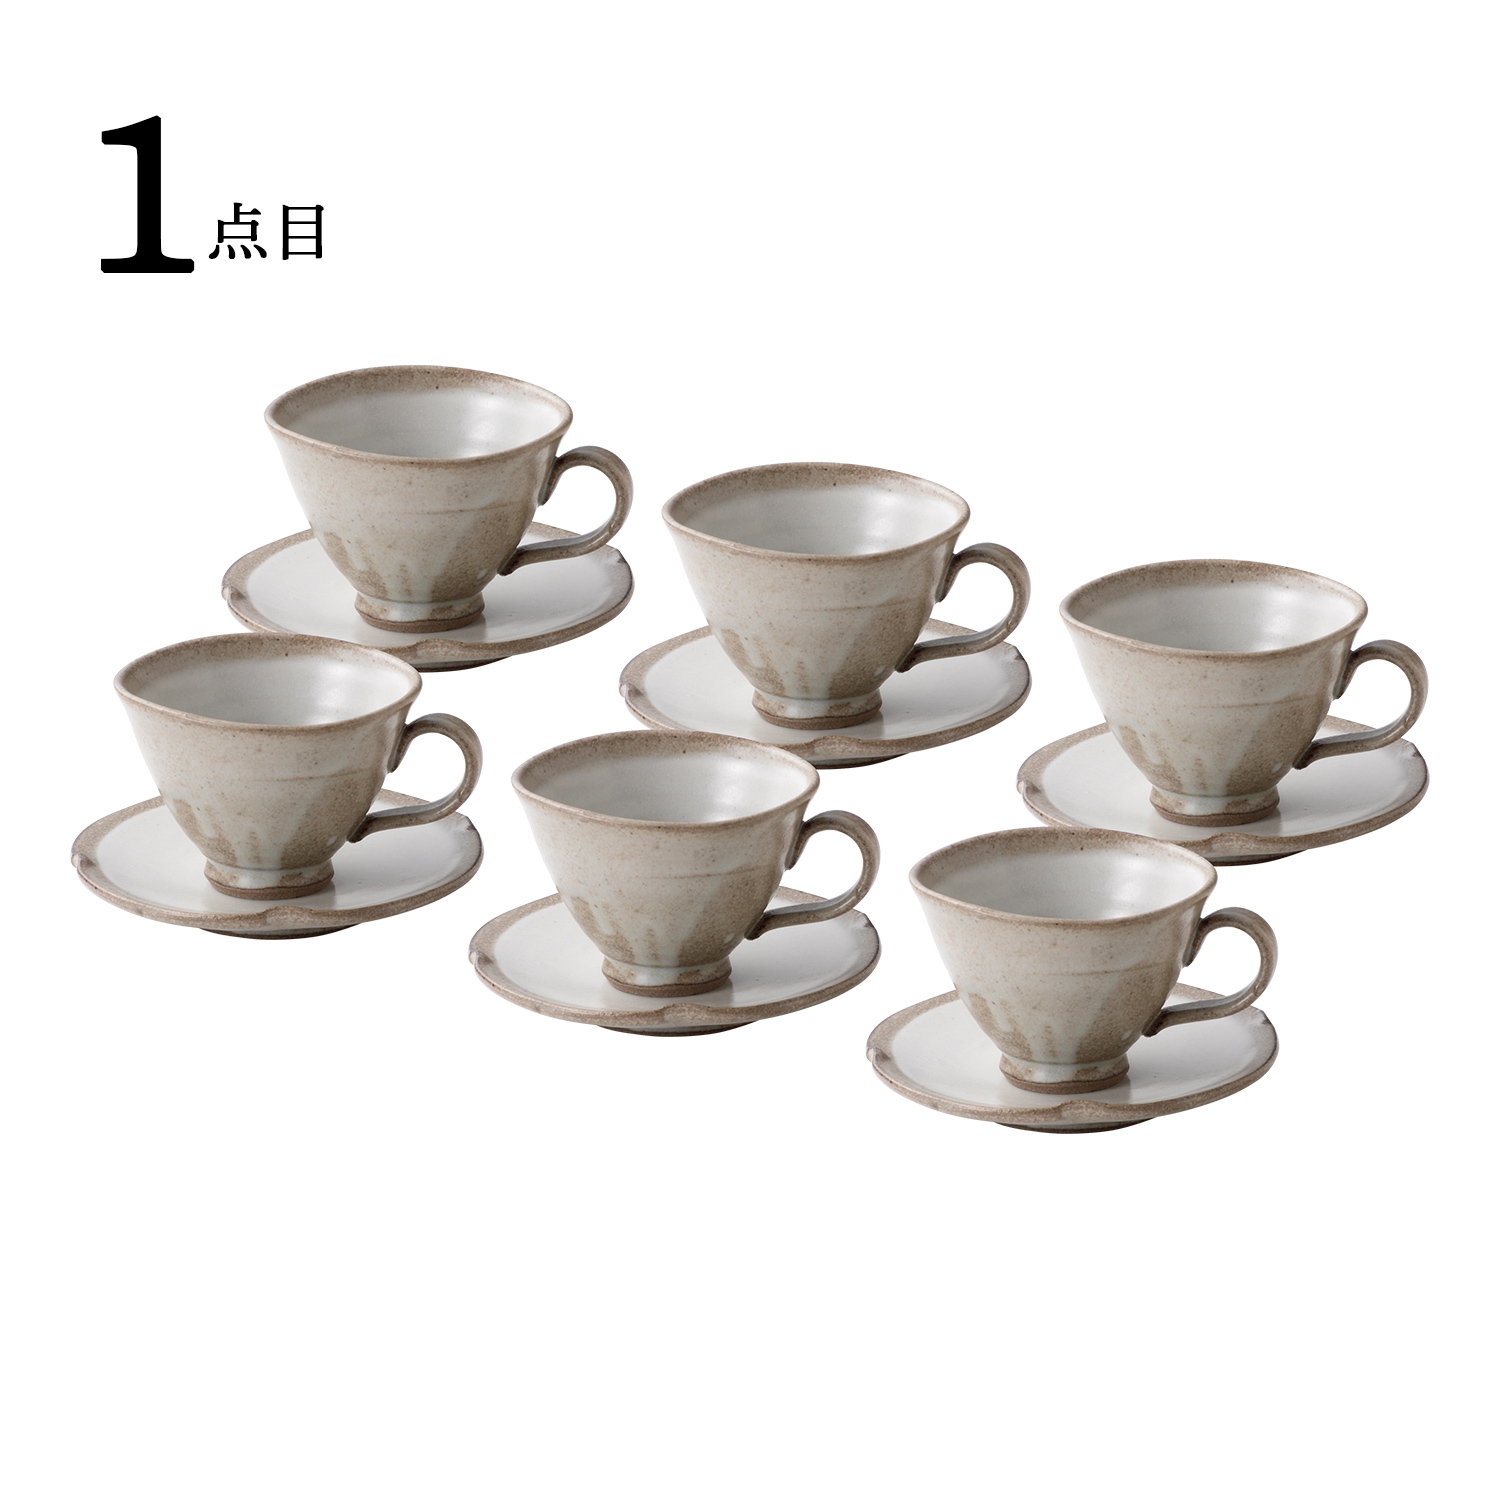 〈益子焼〉コーヒーカップ&ソーサー 6客セット＋〈タカノコーヒー〉有機栽培コーヒーセット